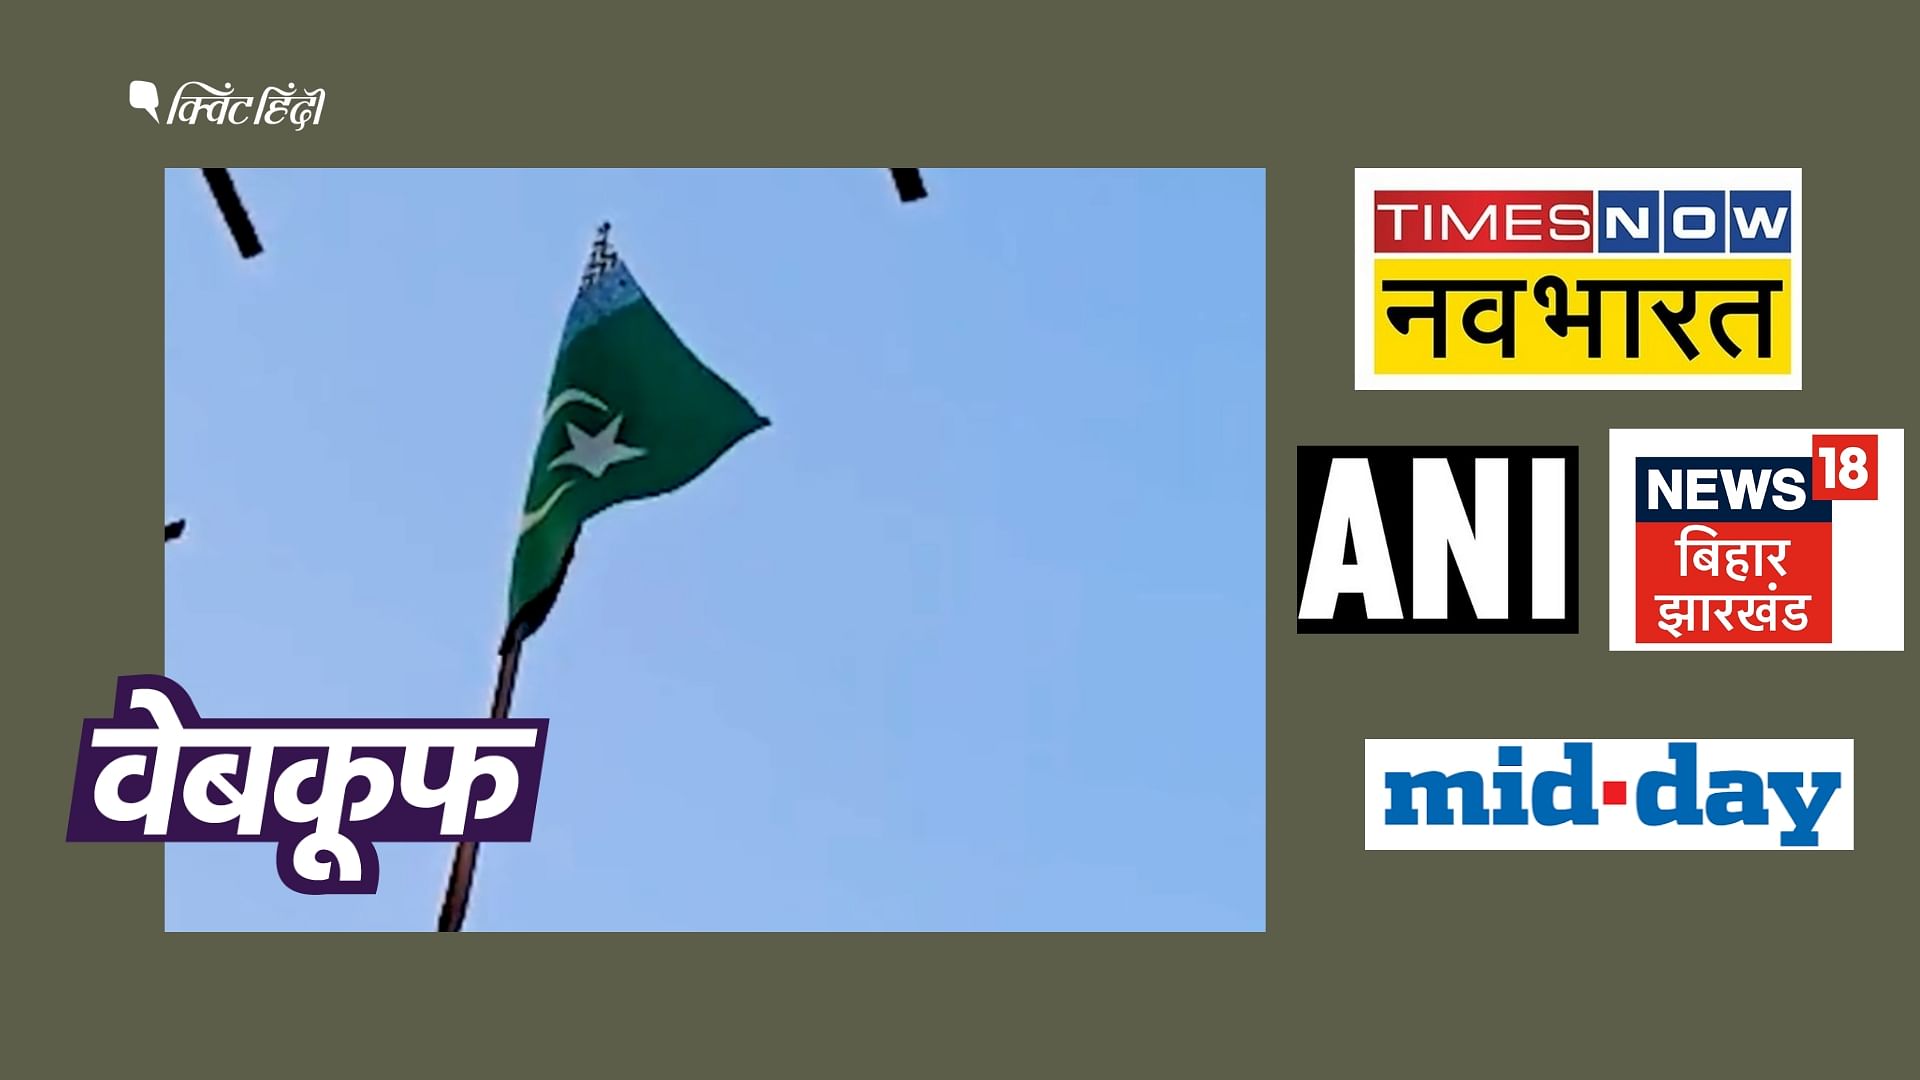 <div class="paragraphs"><p>न्यूज चैनलों ने इसे बिहार में फहराया गया पाकिस्तानी झंडा बताया</p></div>